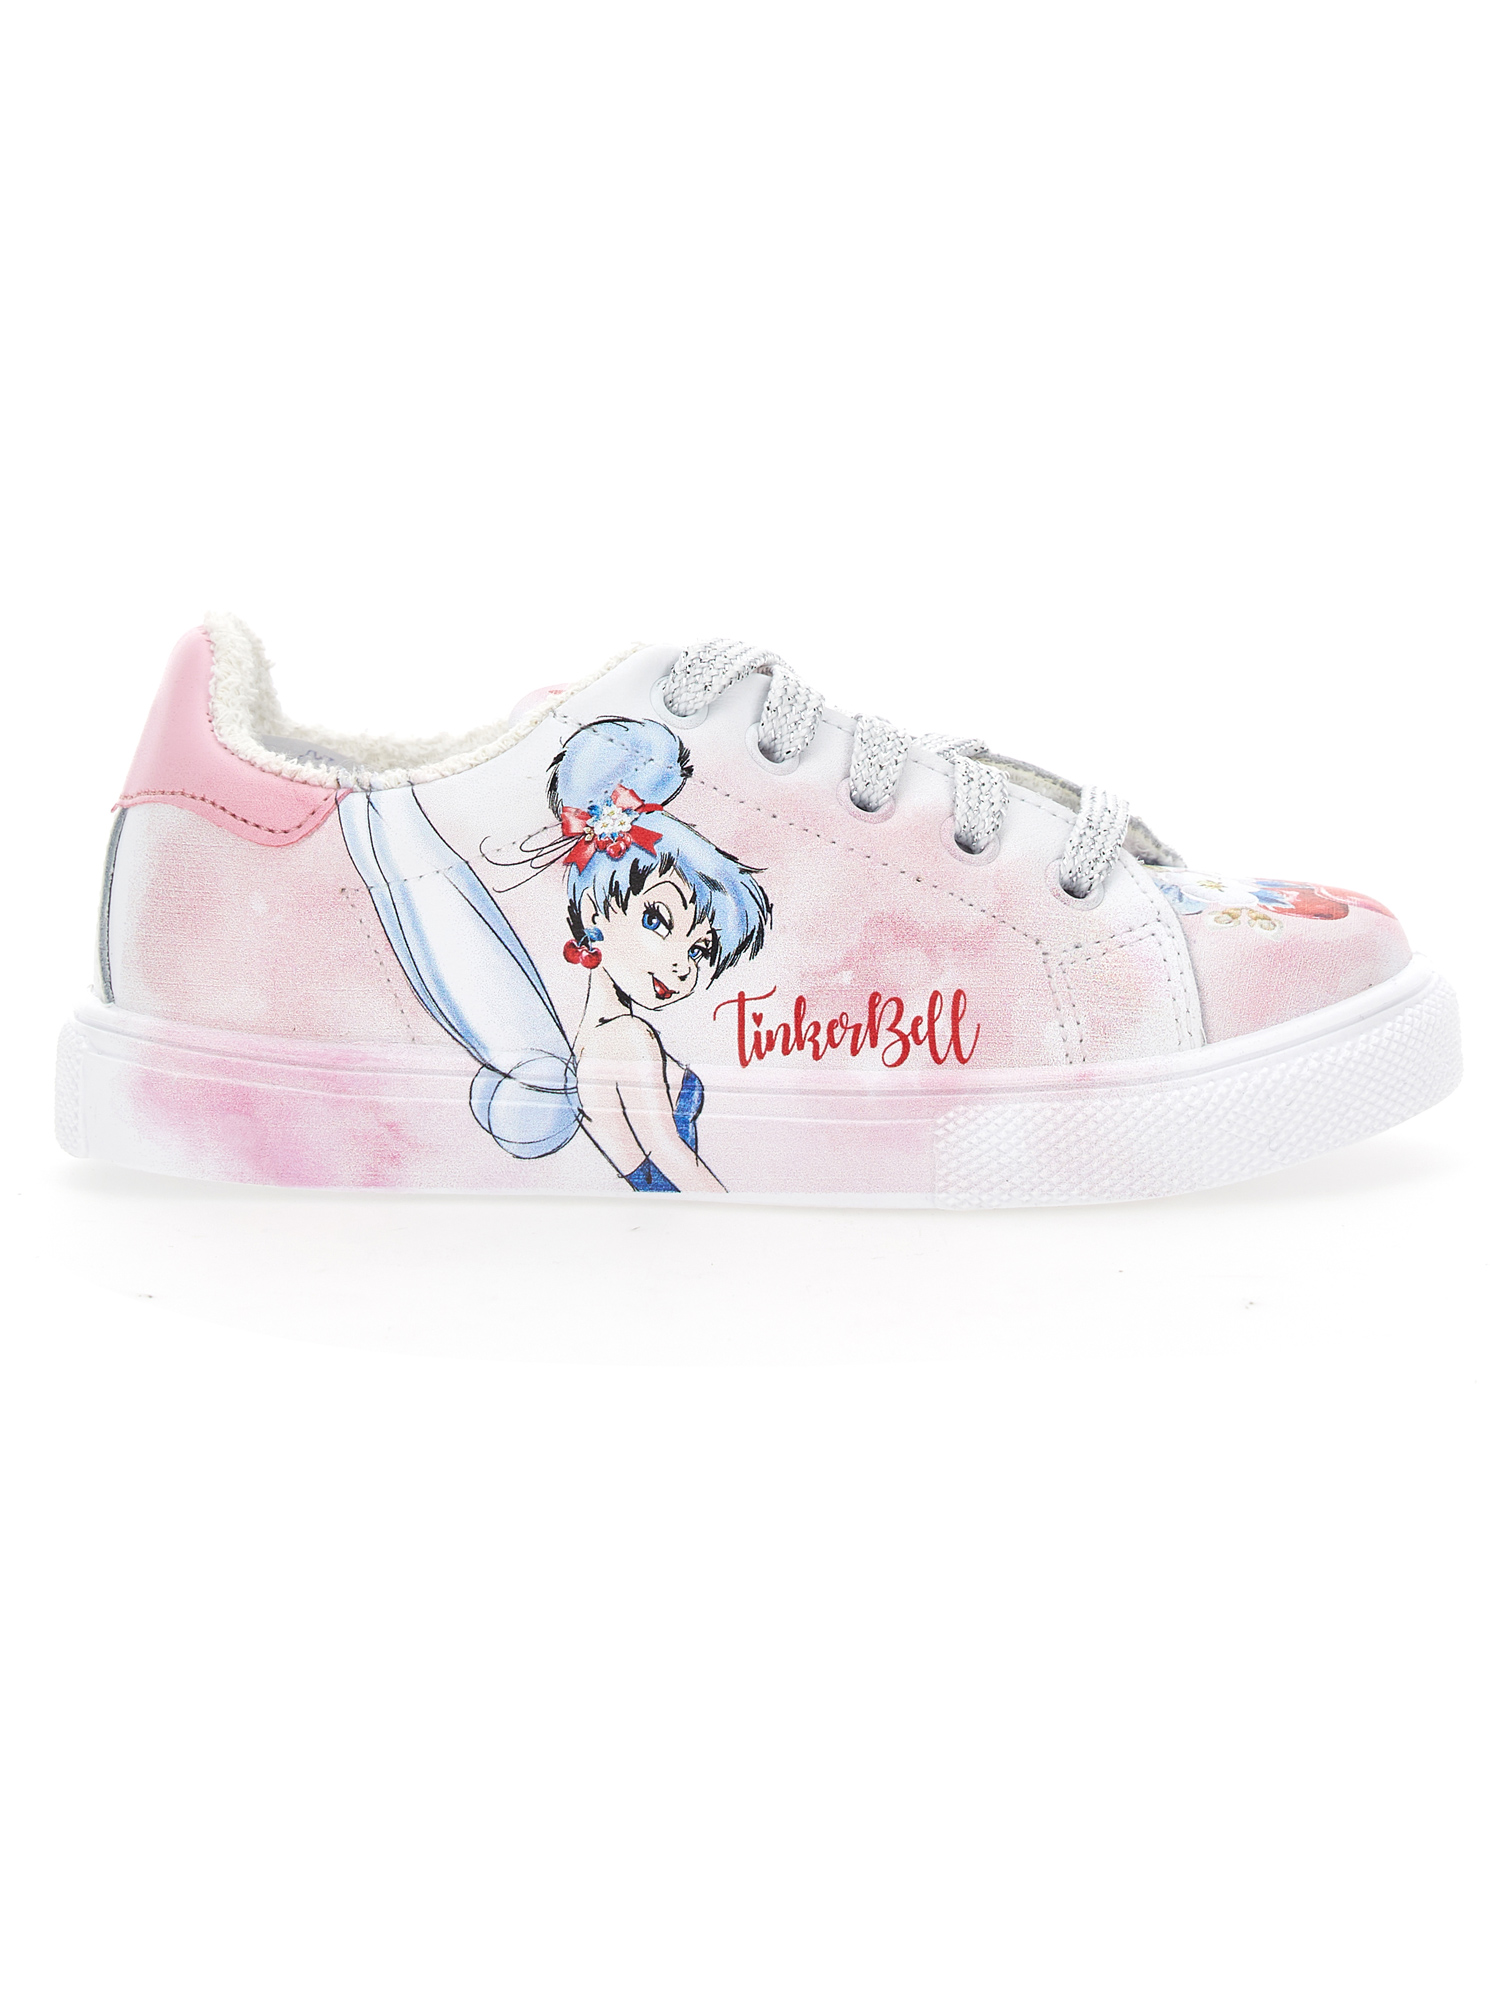 Monnalisa Tinkerbell Print Sneakers In Cream + Pink